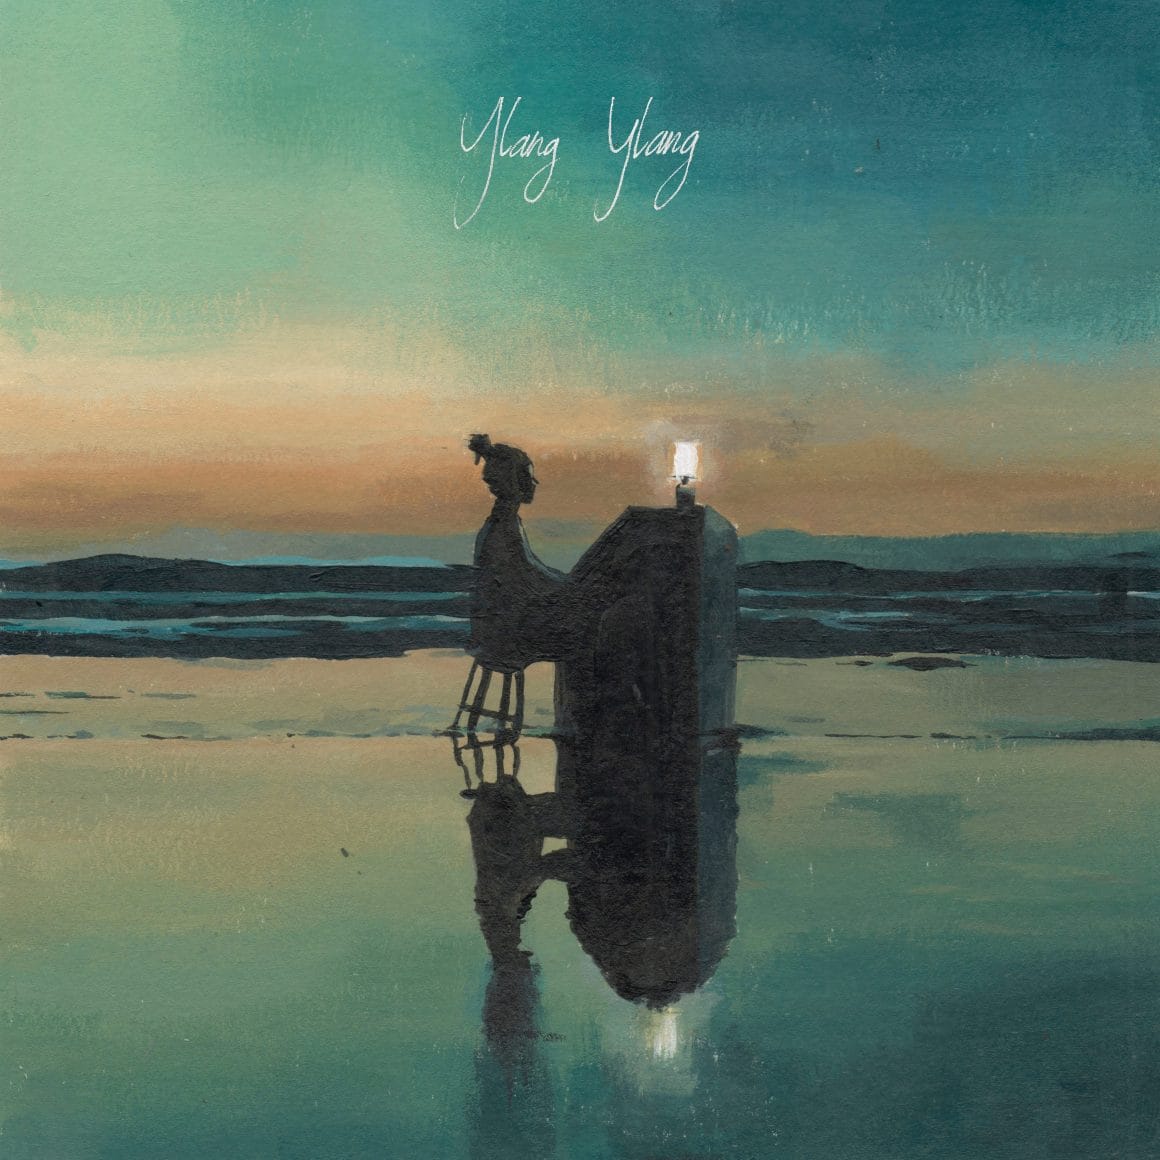 Visuel du nouvel EP "Ylang Ylang" de l'artiste FKJ.